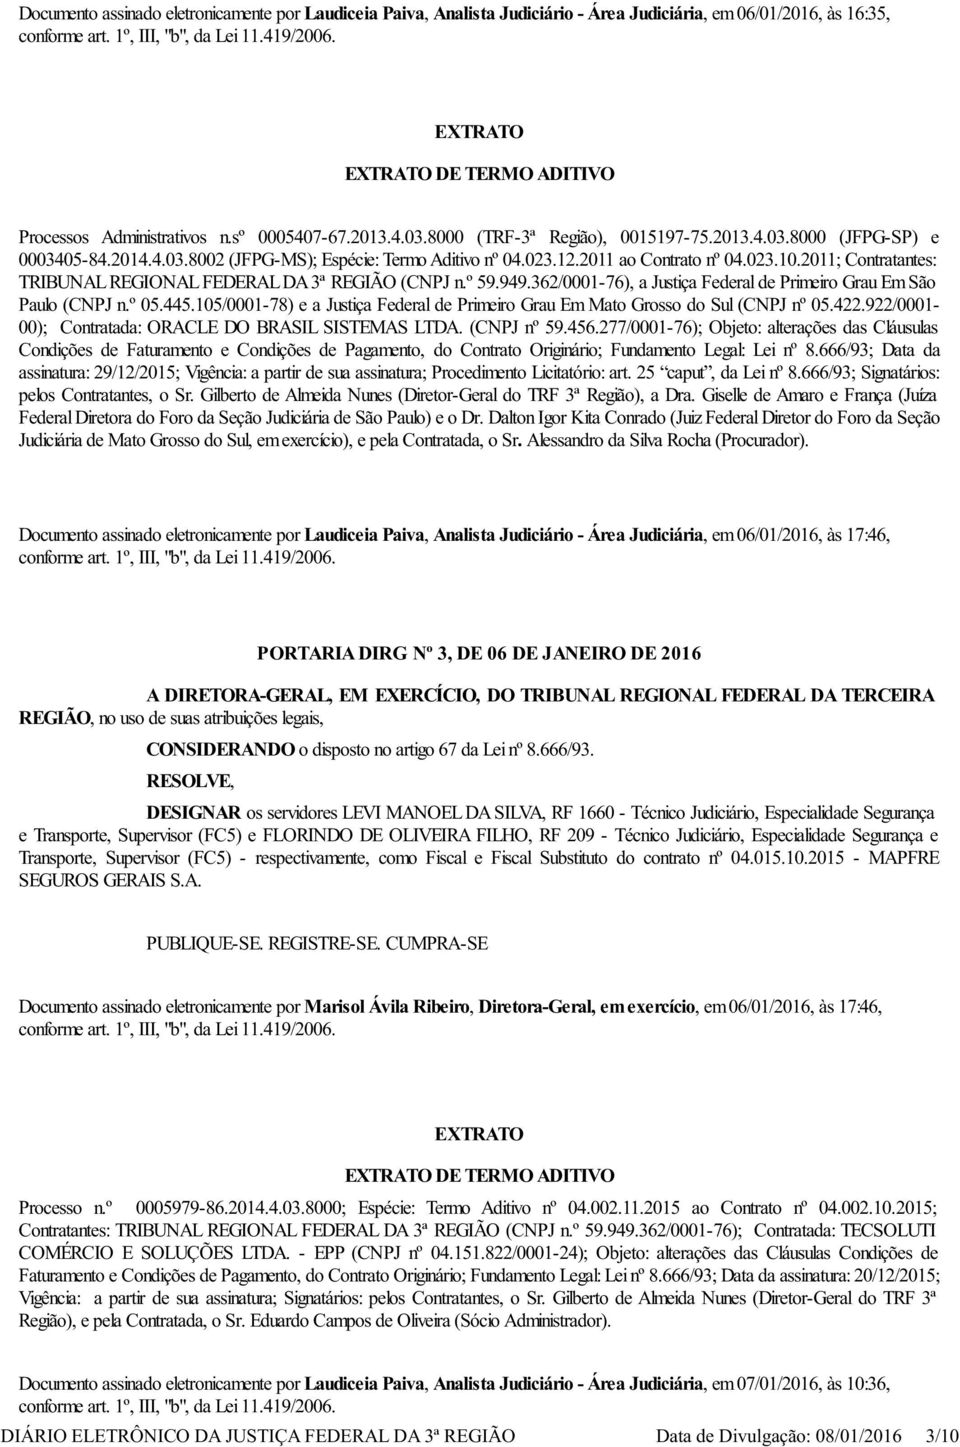 2011; Contratantes: TRIBUNAL REGIONAL FEDERAL DA 3ª REGIÃO (CNPJ n.º 59.949.362/0001-76), a Justiça Federal de Primeiro Grau Em São Paulo (CNPJ n.º 05.445.